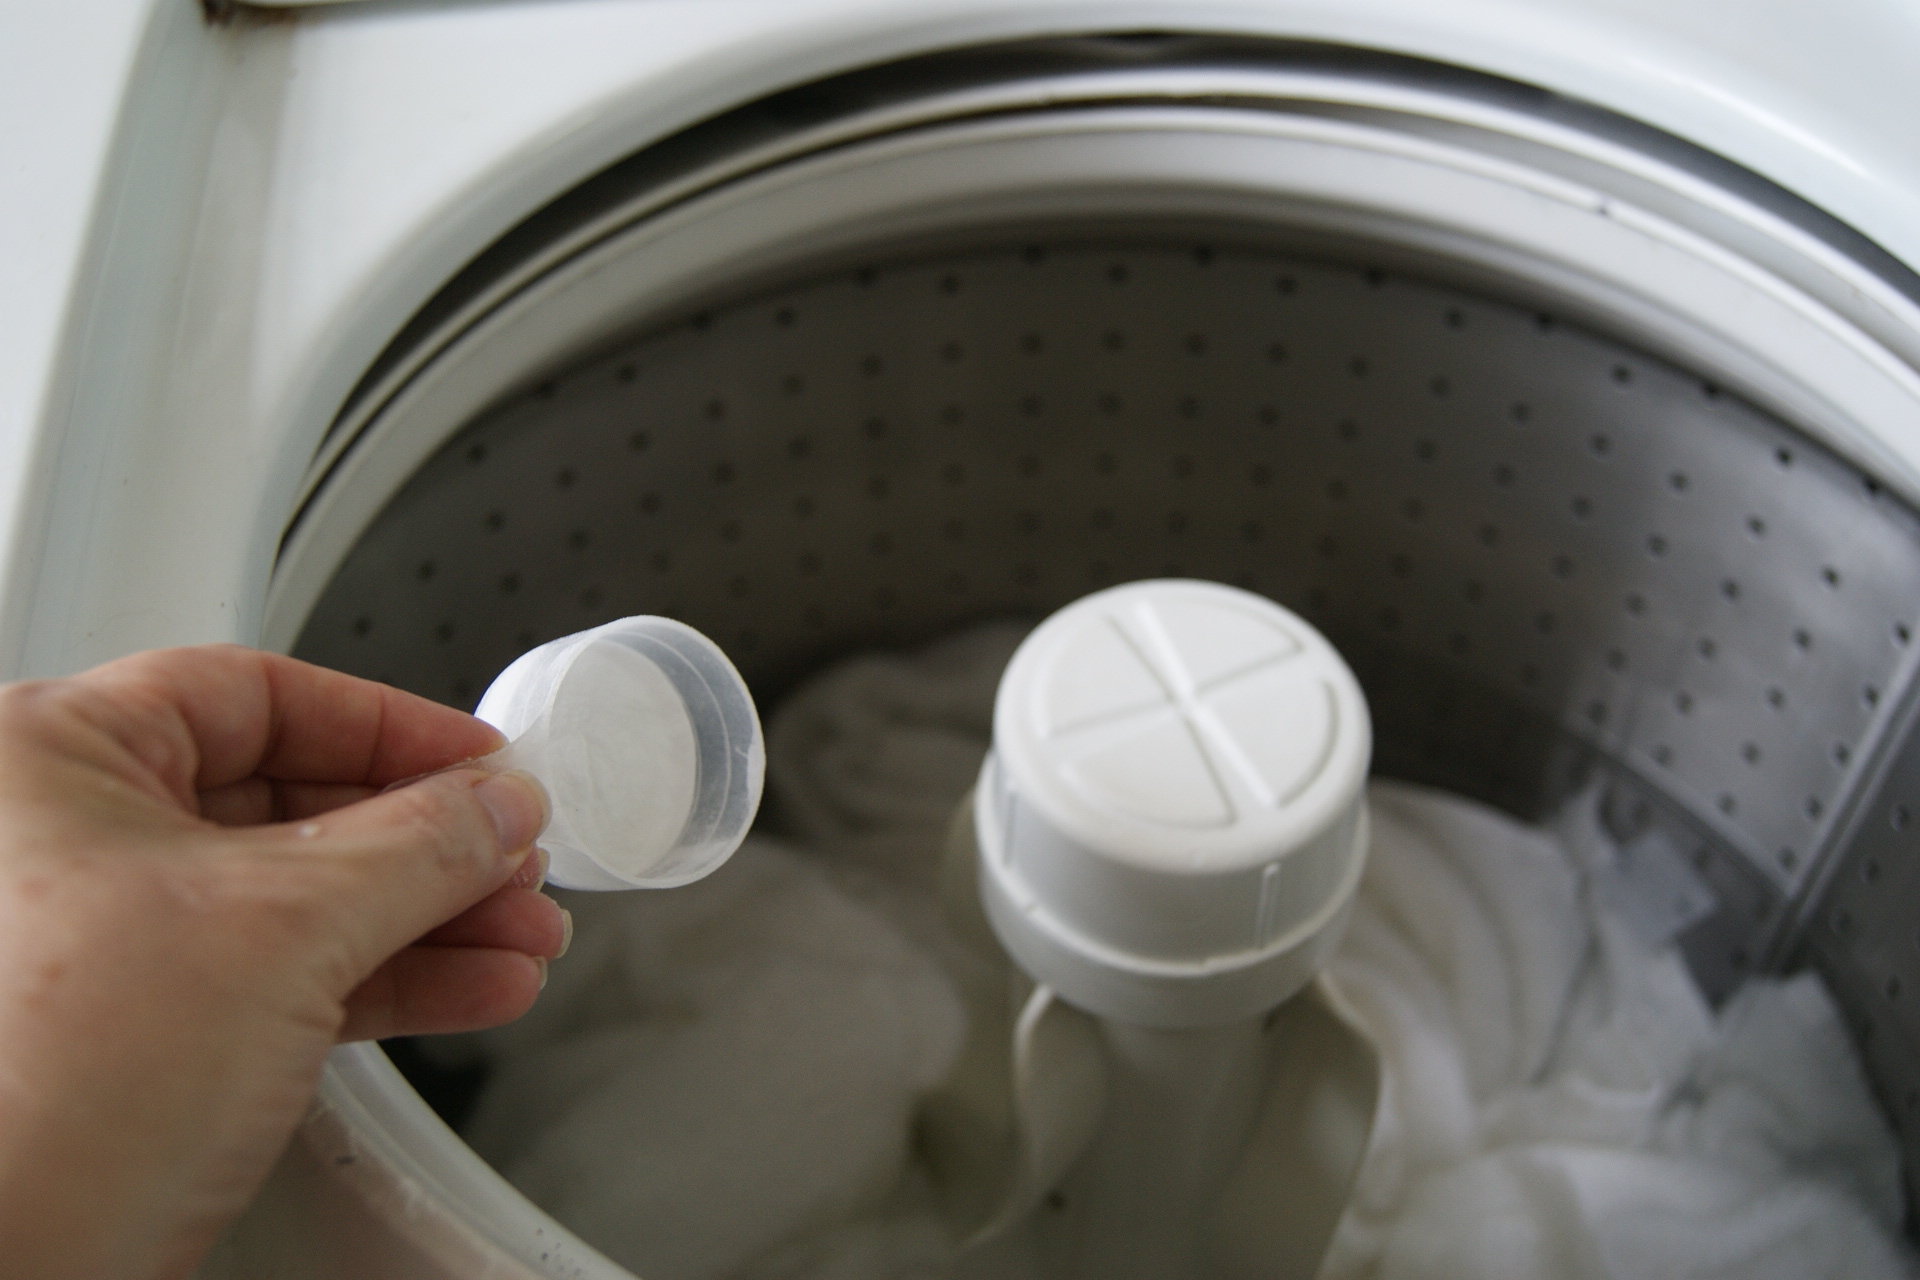 Minha máquina de lavar tem mau cheiro: veja como desodorizá-la